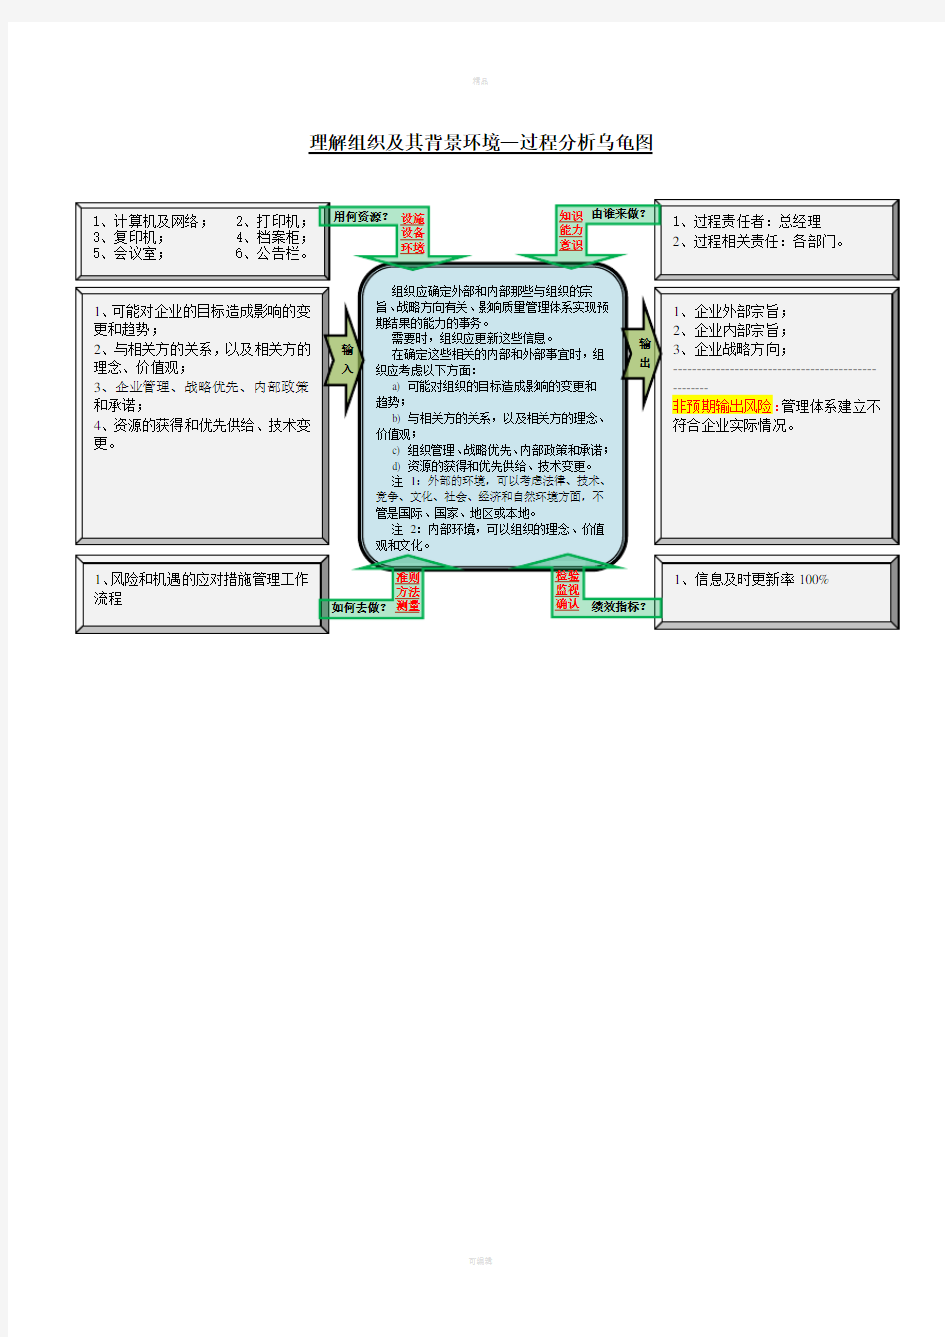 过程分析乌龟图(ISO9001：2015版)